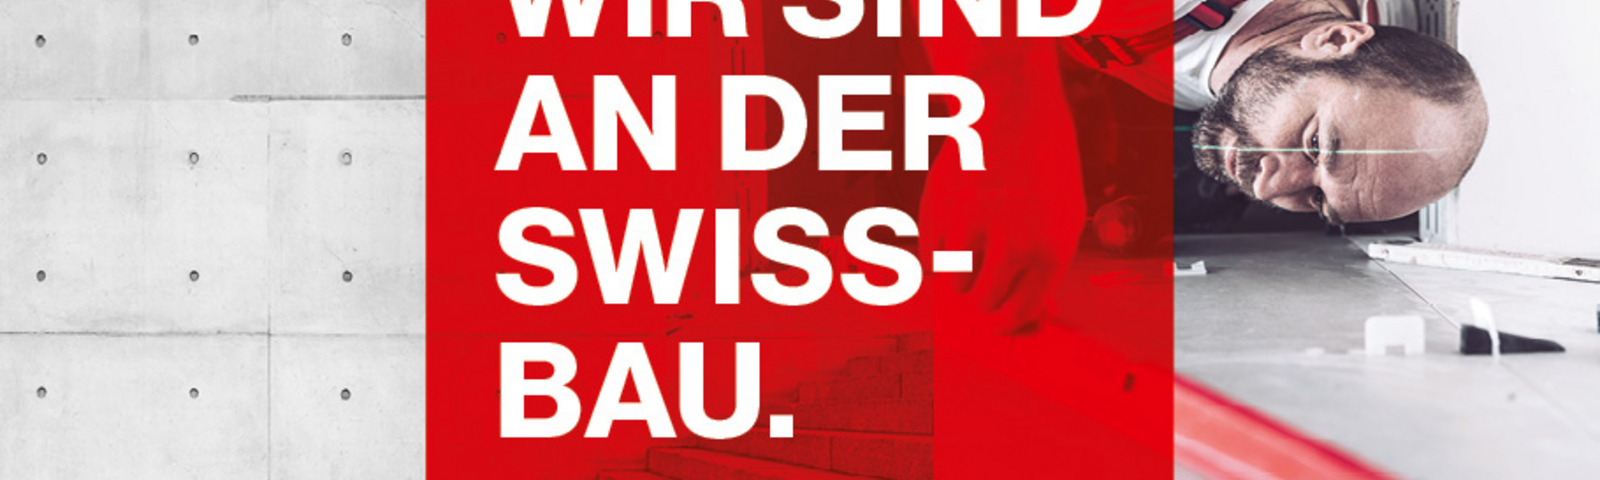 Swissbau 2022